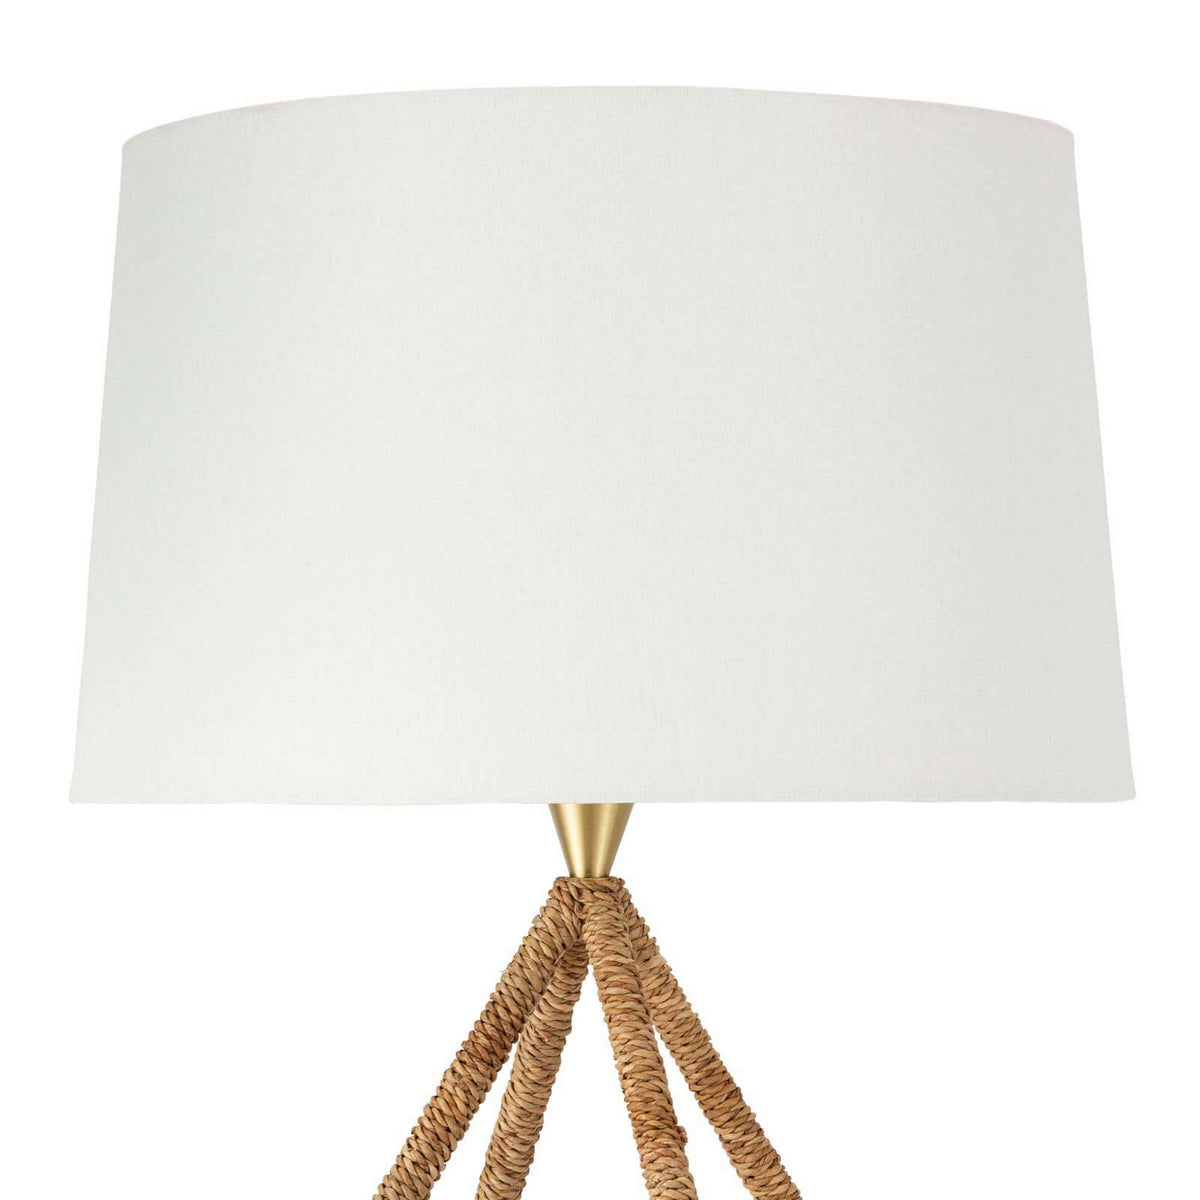 Regina Andrew - 13-1428 - One Light Table Lamp - Bimini - Natural